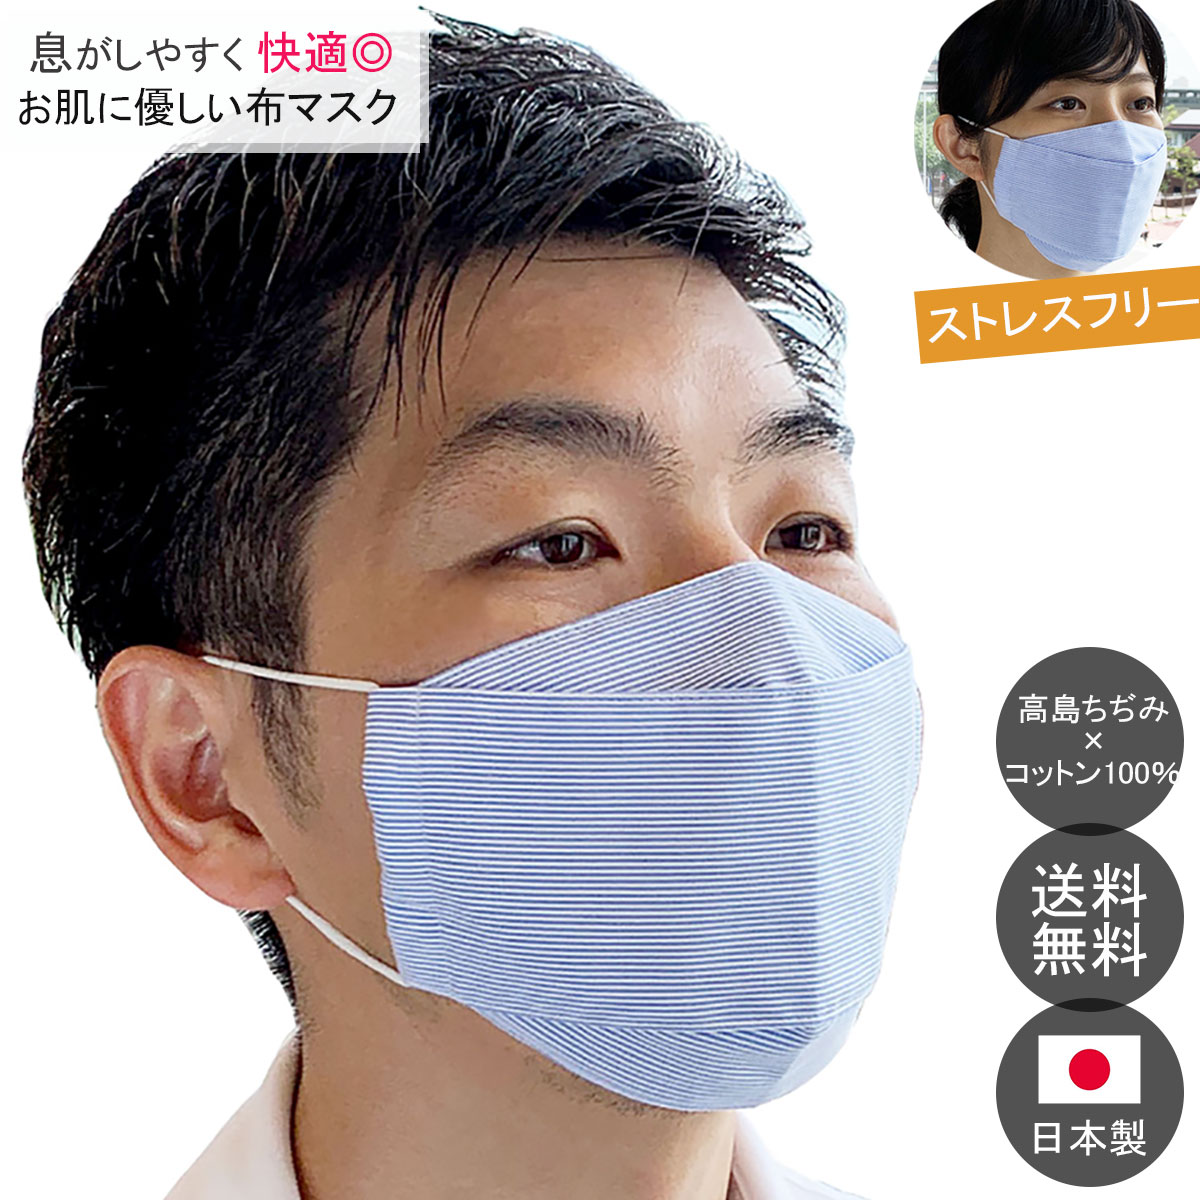 日本製 布マスク 舟形 